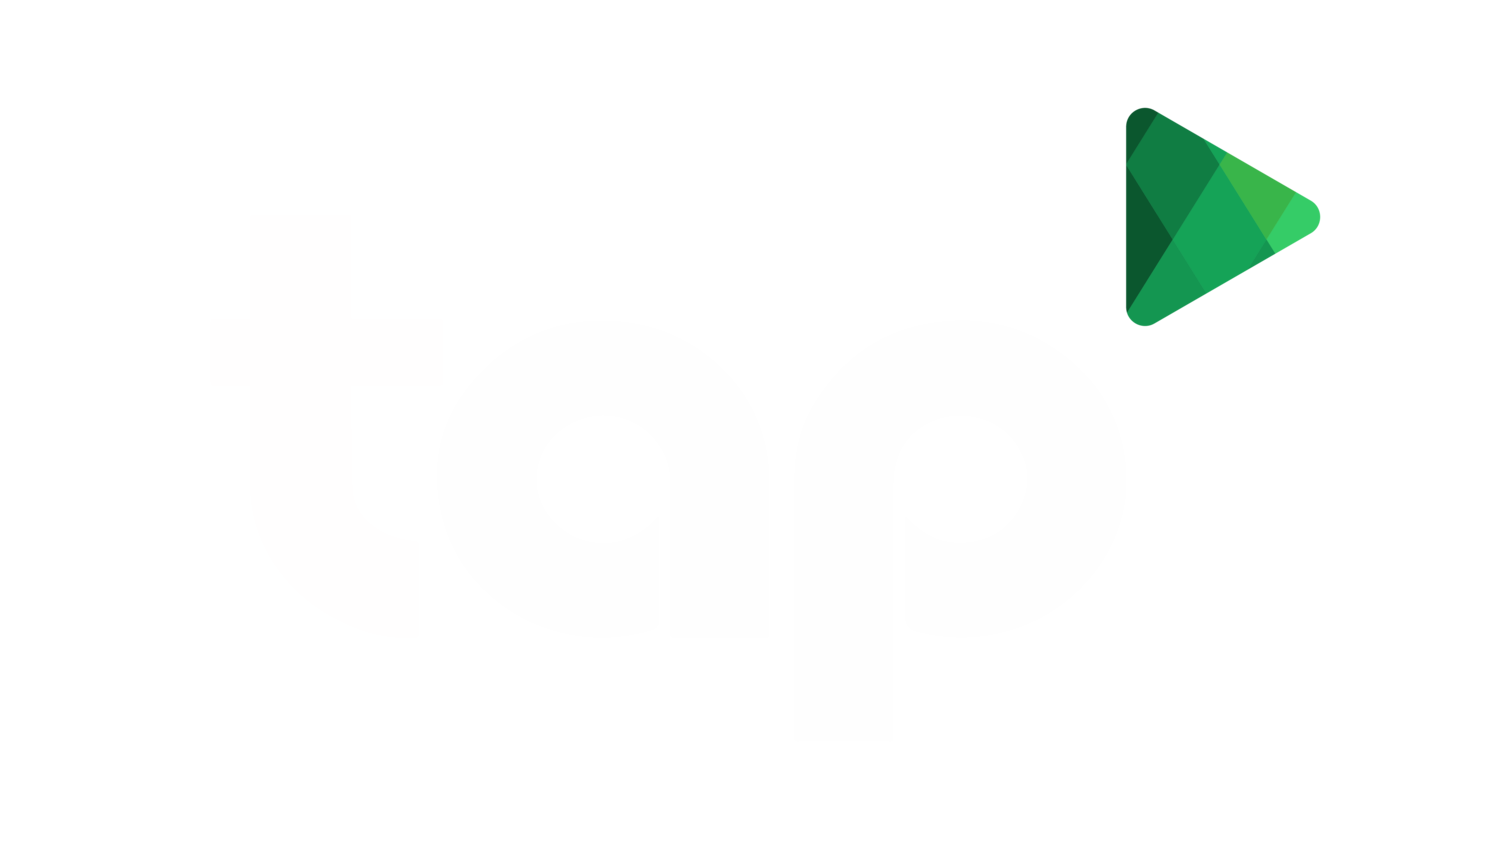 tap Media